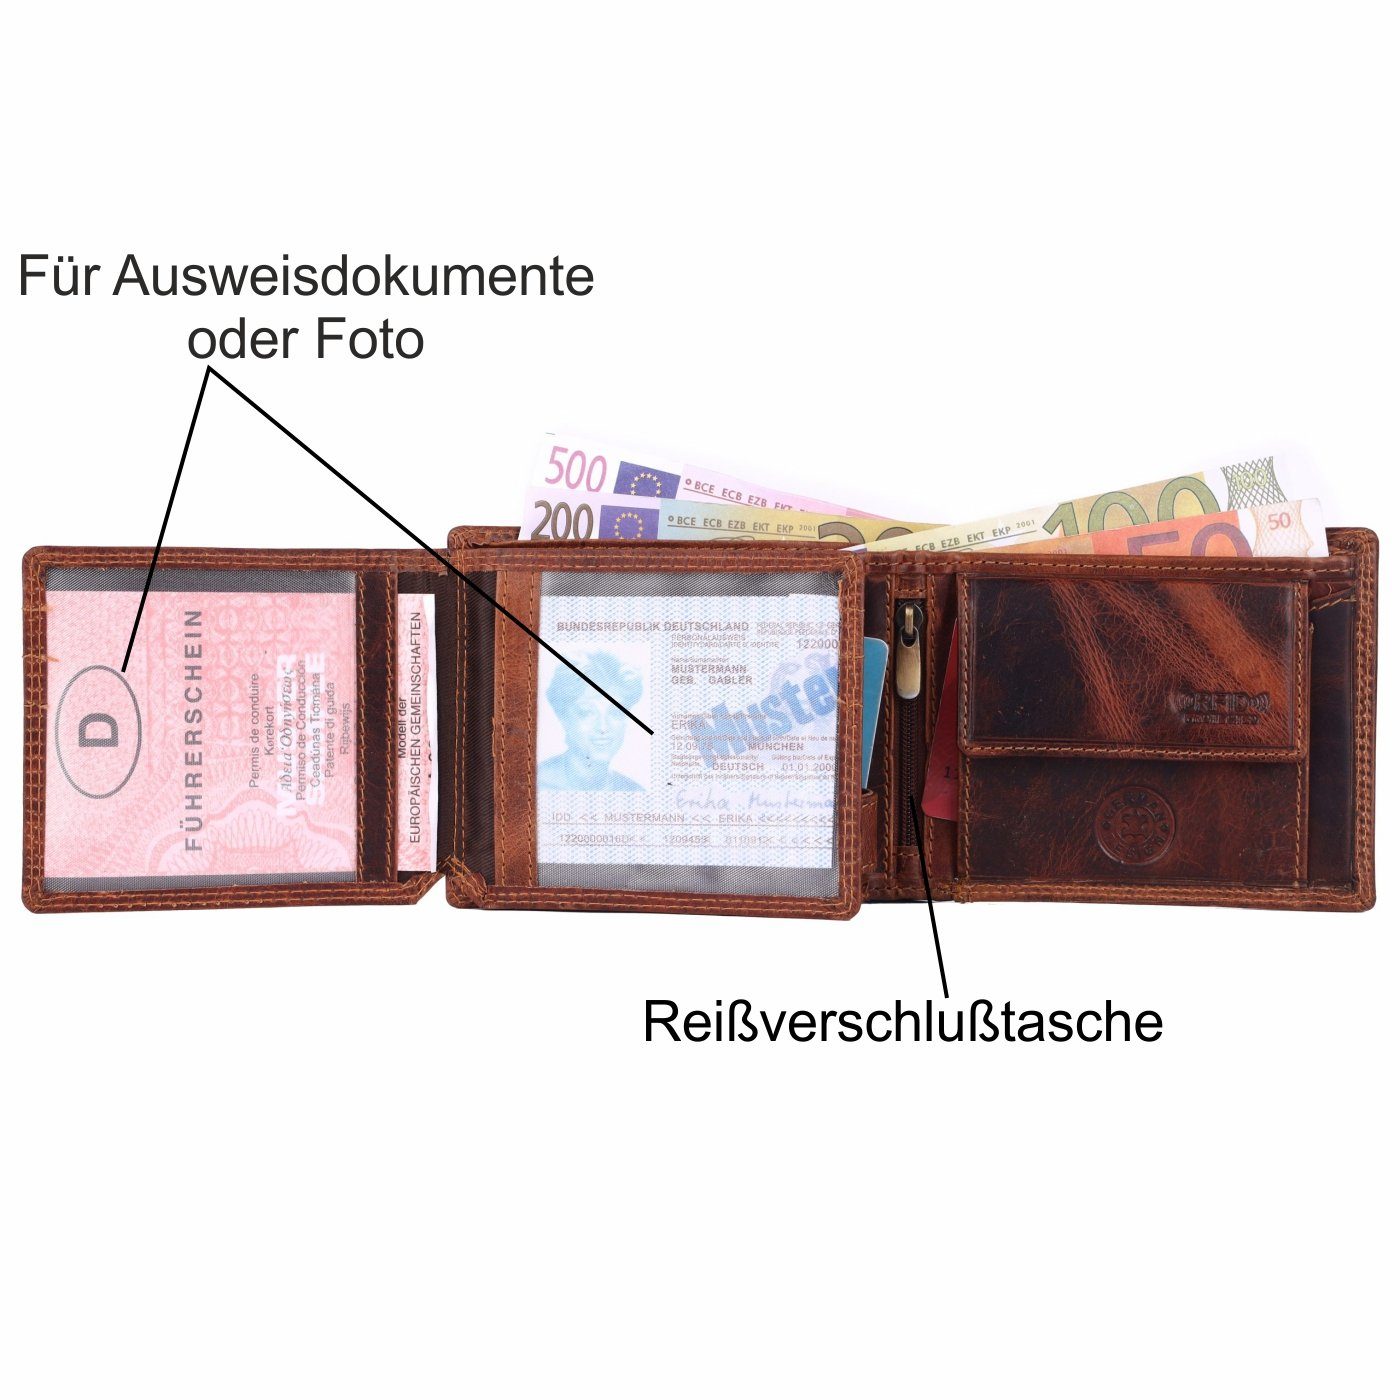 SHG Geldbörse Herren Leder Männerbörse Brieftasche RFID mit Portemonnaie, Münzfach Lederbörse Börse Schutz Büffelleder